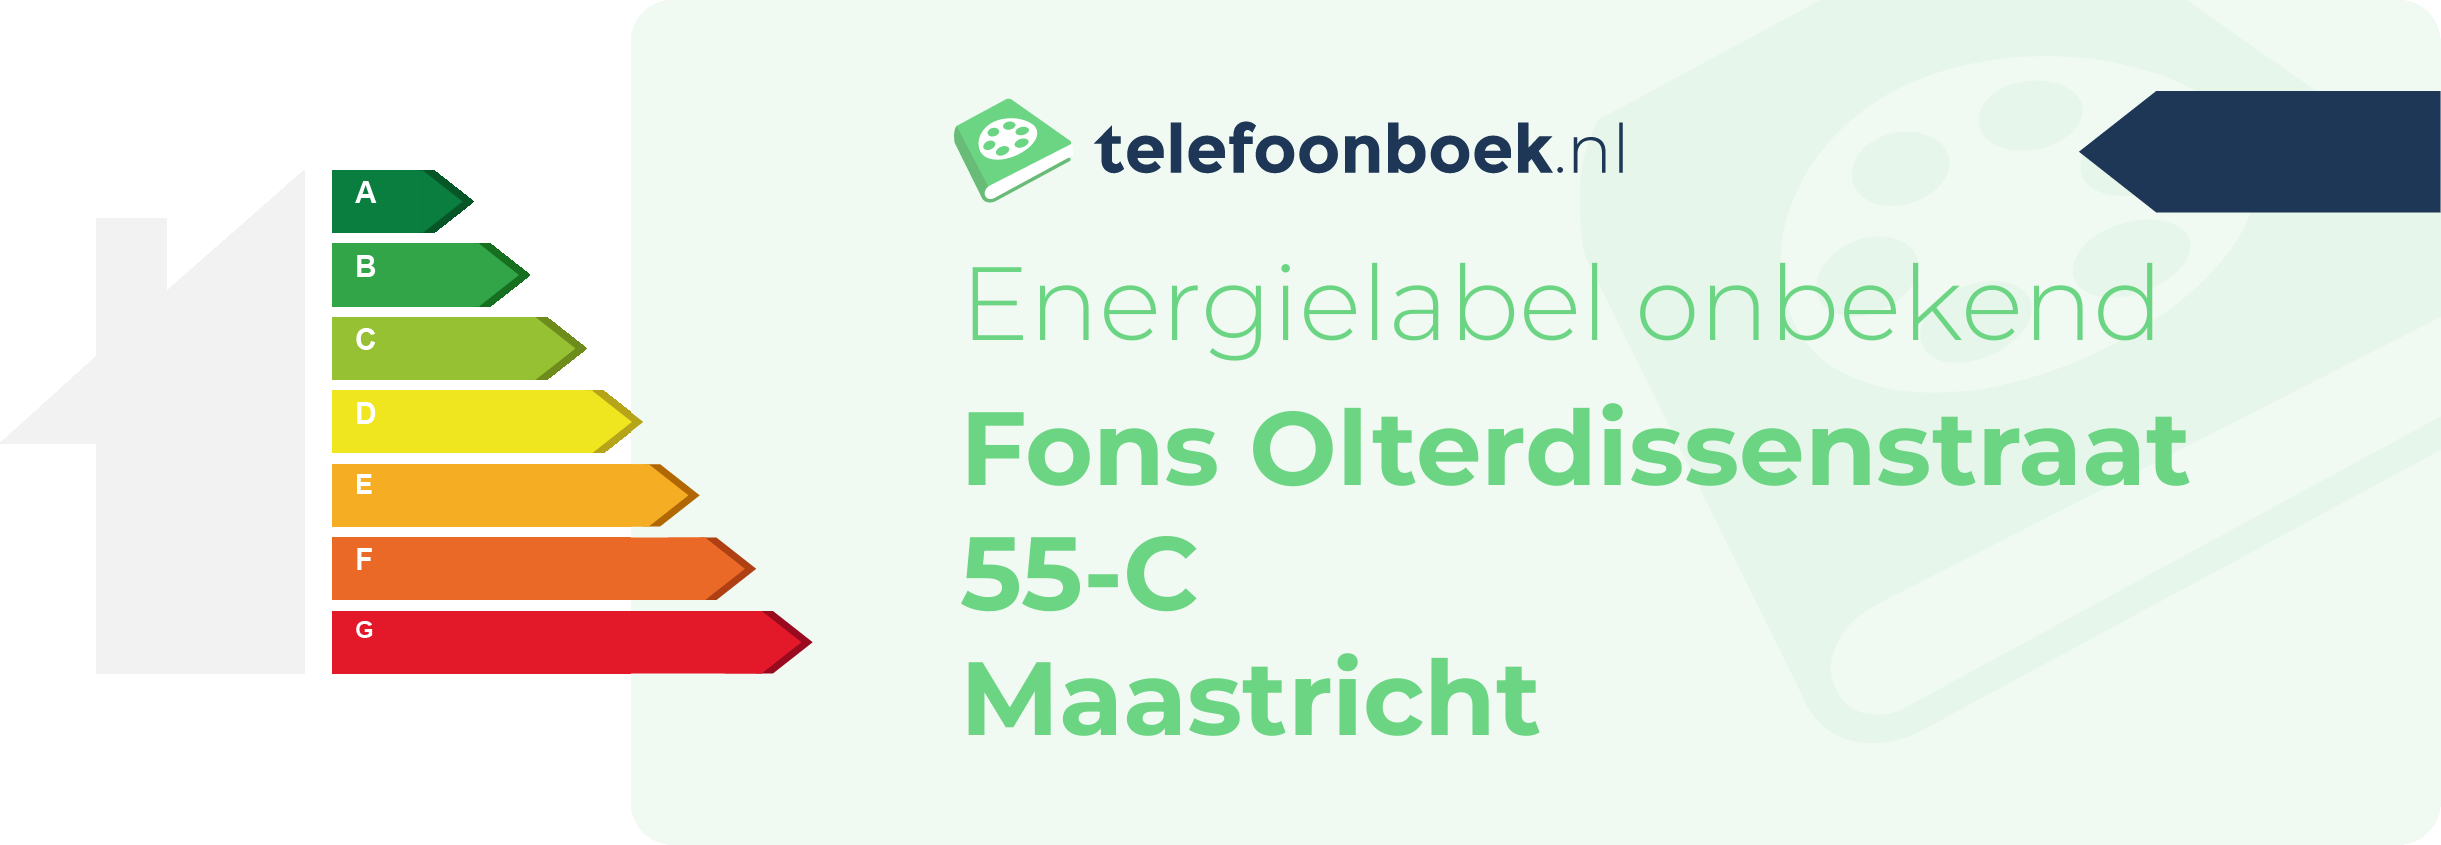 Energielabel Fons Olterdissenstraat 55-C Maastricht